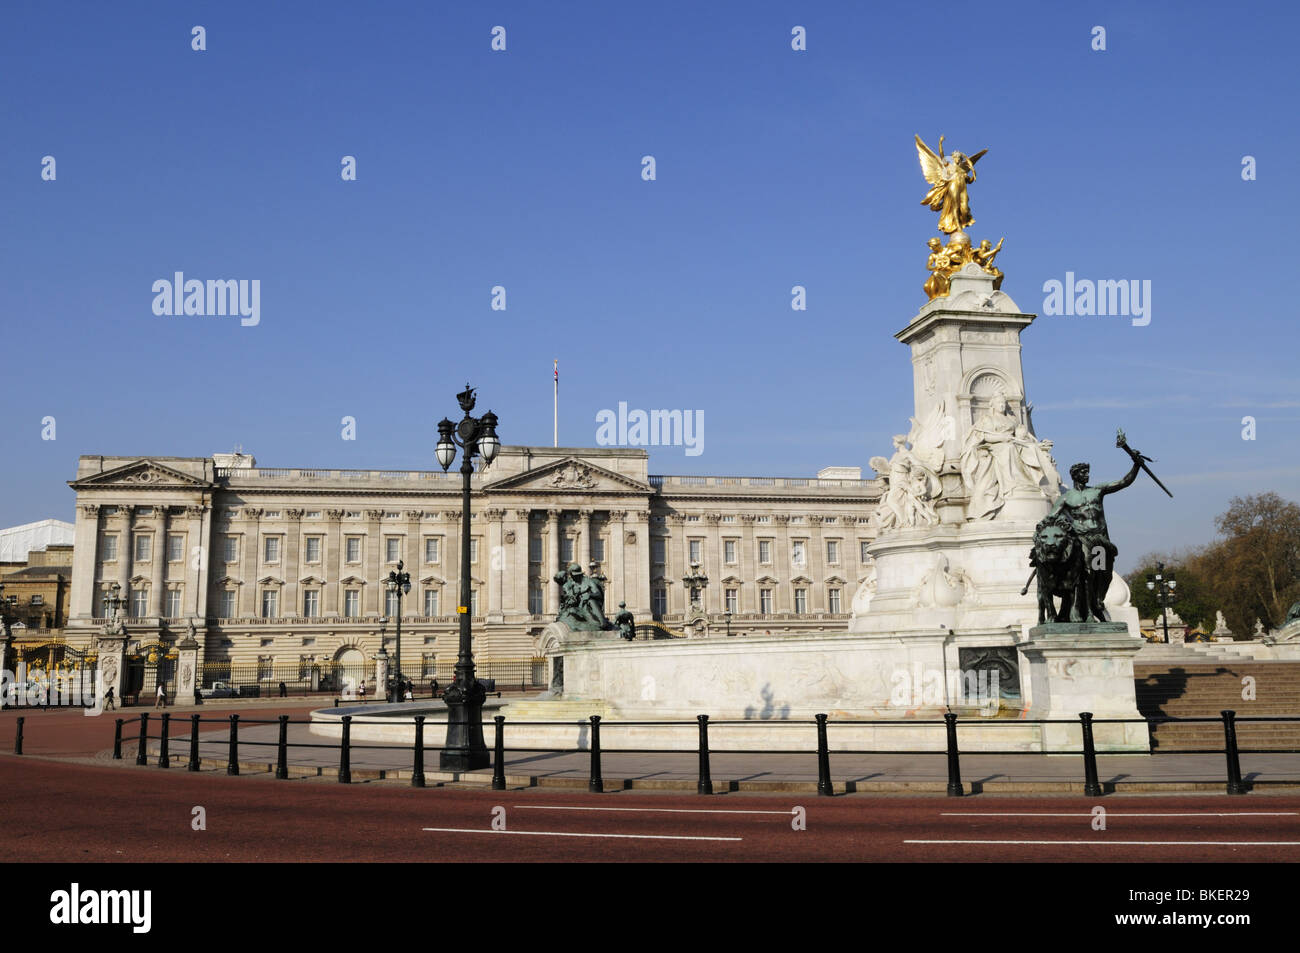 Monument de la reine Victoria et le palais de Buckingham, Londres, Angleterre, Royaume-Uni Banque D'Images